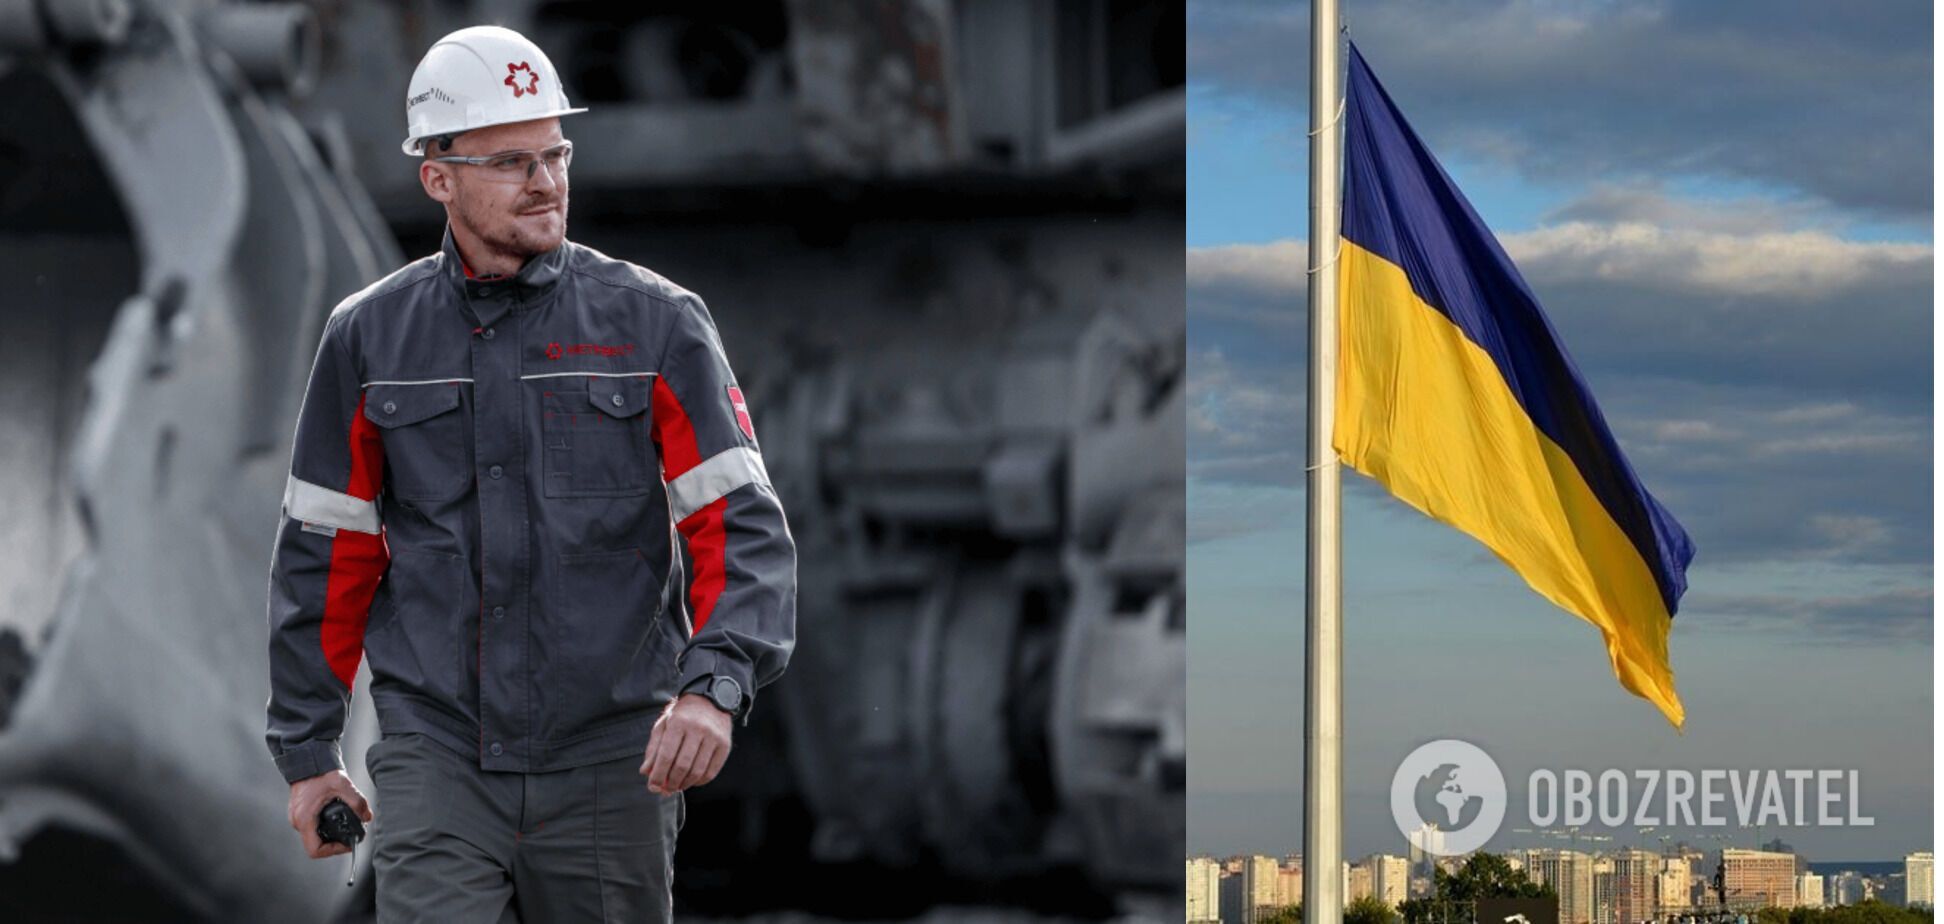 'Запорожсталь' поднял флаг Украины на самой высокой точке над Днепром. Фото